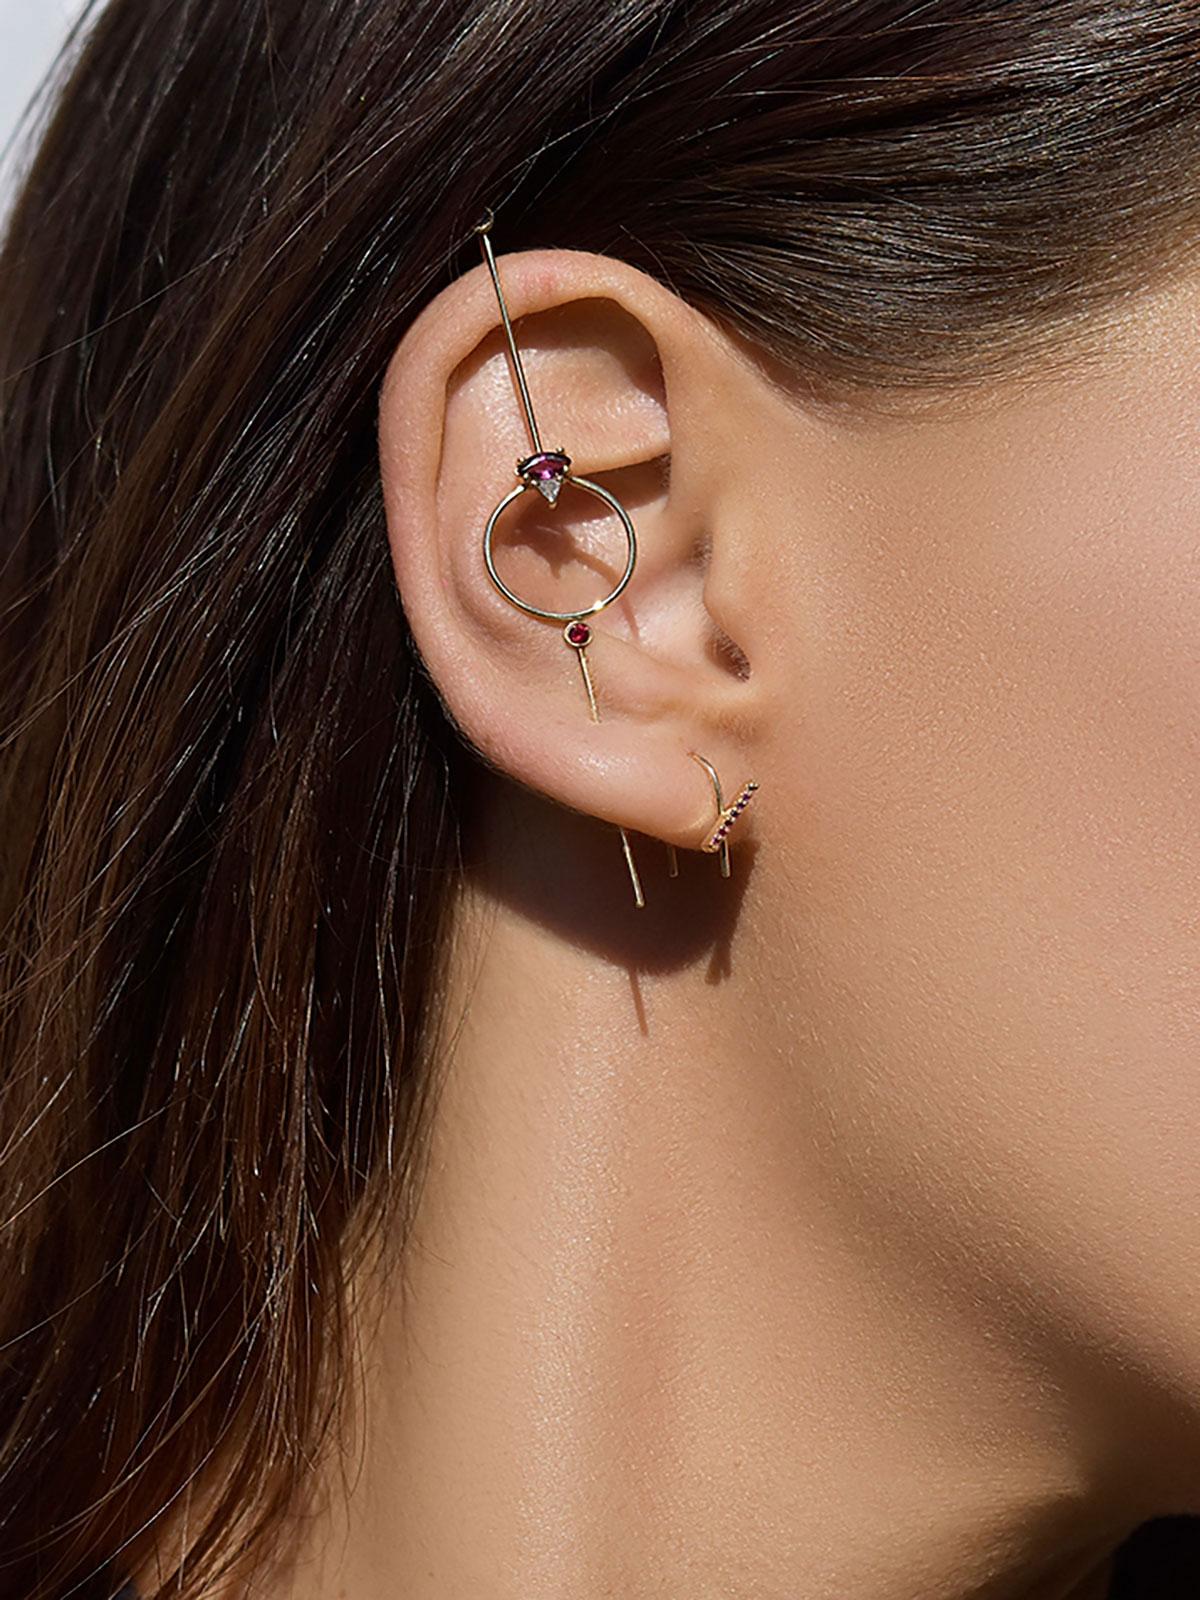 La boucle d'oreille Seeing Eye Needle est constituée d'une tige en or en forme d'aiguille qui traverse le lobe de l'oreille et s'accroche sur le dessus. Ce style est composé d'un cirque orné de pierres précieuses. 

Comment le porter : 
Faites